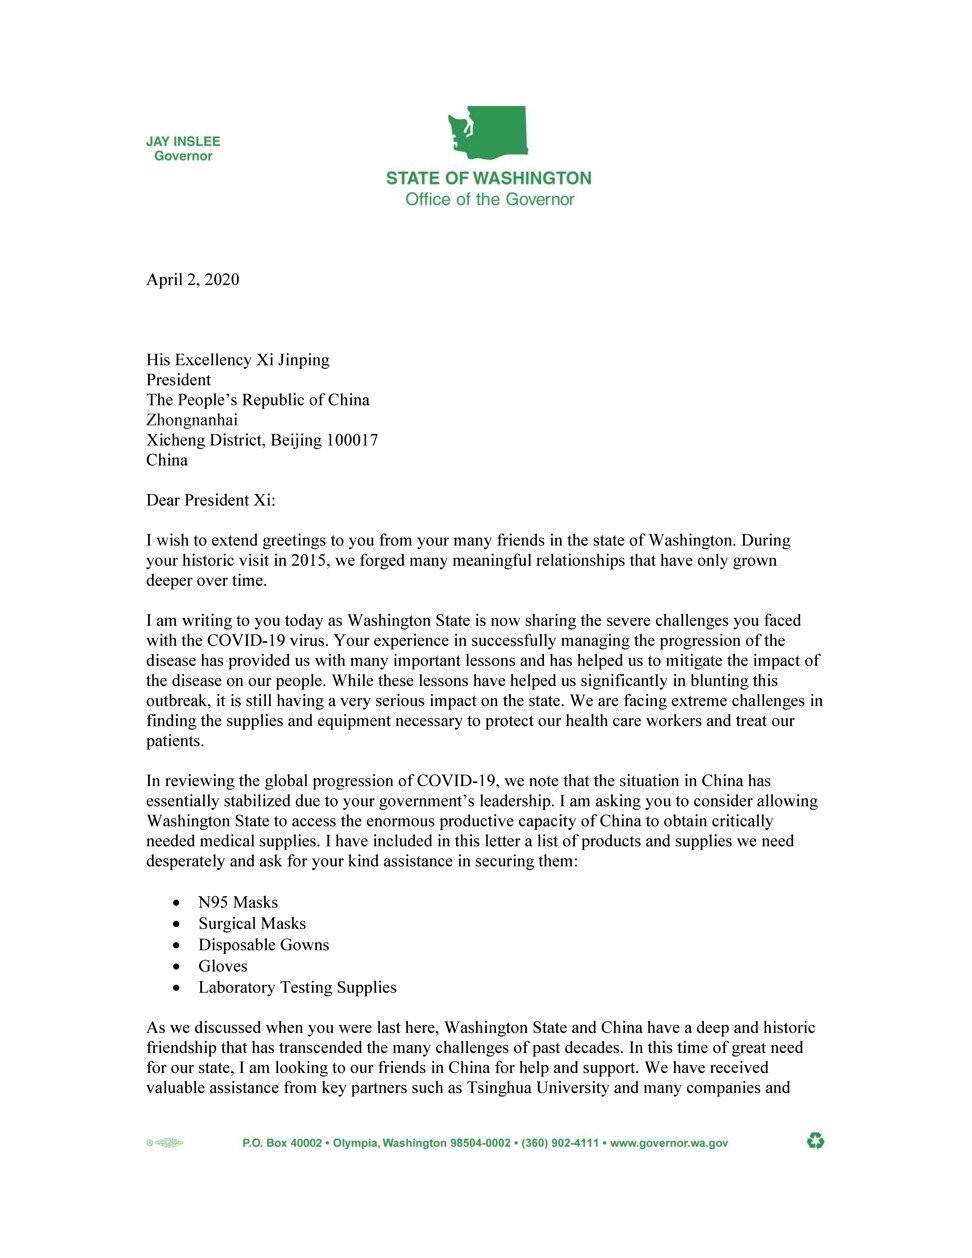 Bức thư của Thống đốc bang Washington Jay Inslee gửi Chủ tịch Trung Quốc Tập Cận Bình. Ảnh: SCMP